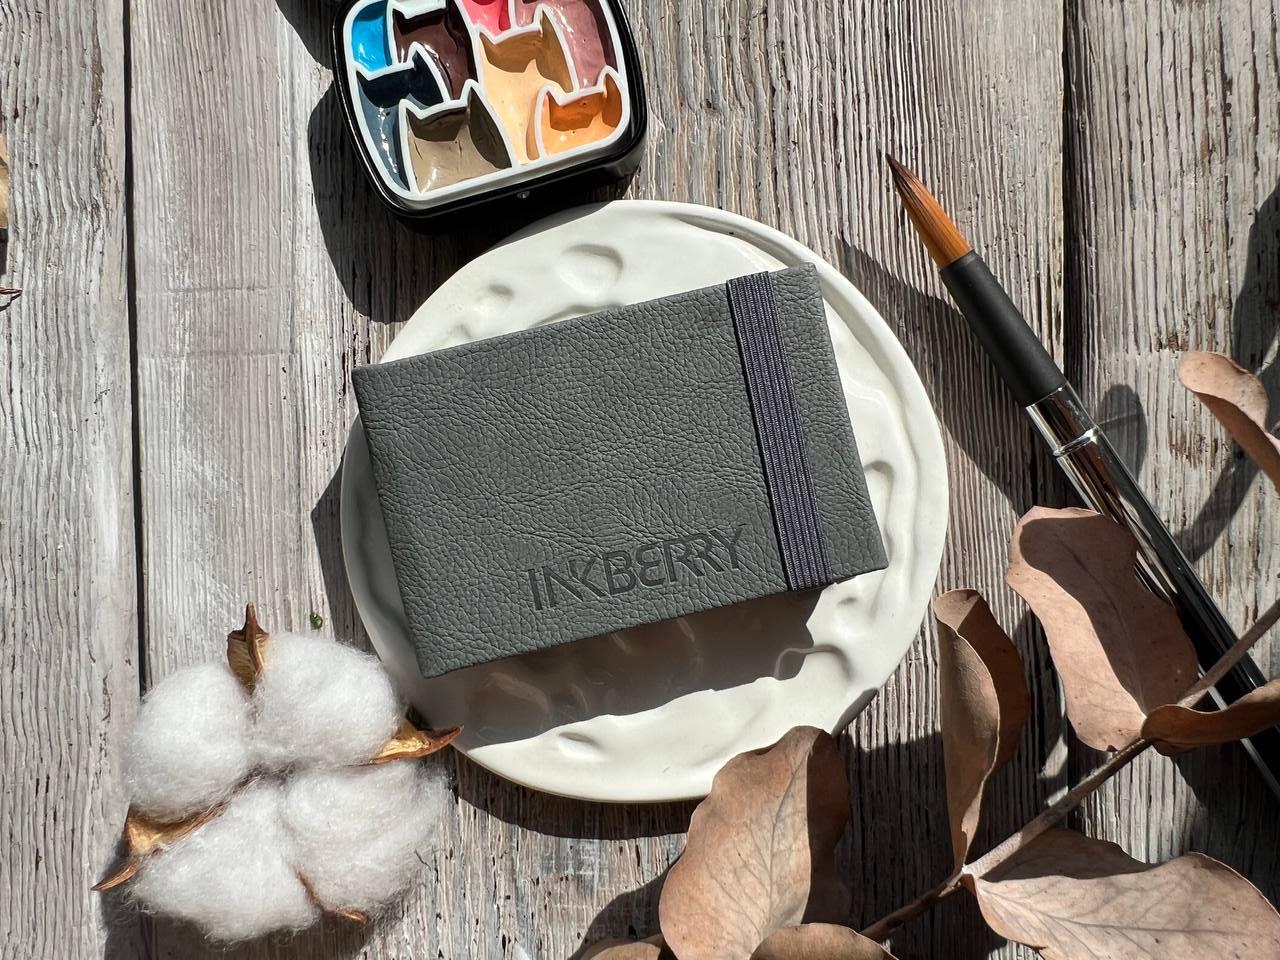 Скетчбук для акварели Inkberry 5х8 см 30 л 230 г 50% хлопка, серый книжная жизнь лили сажиной